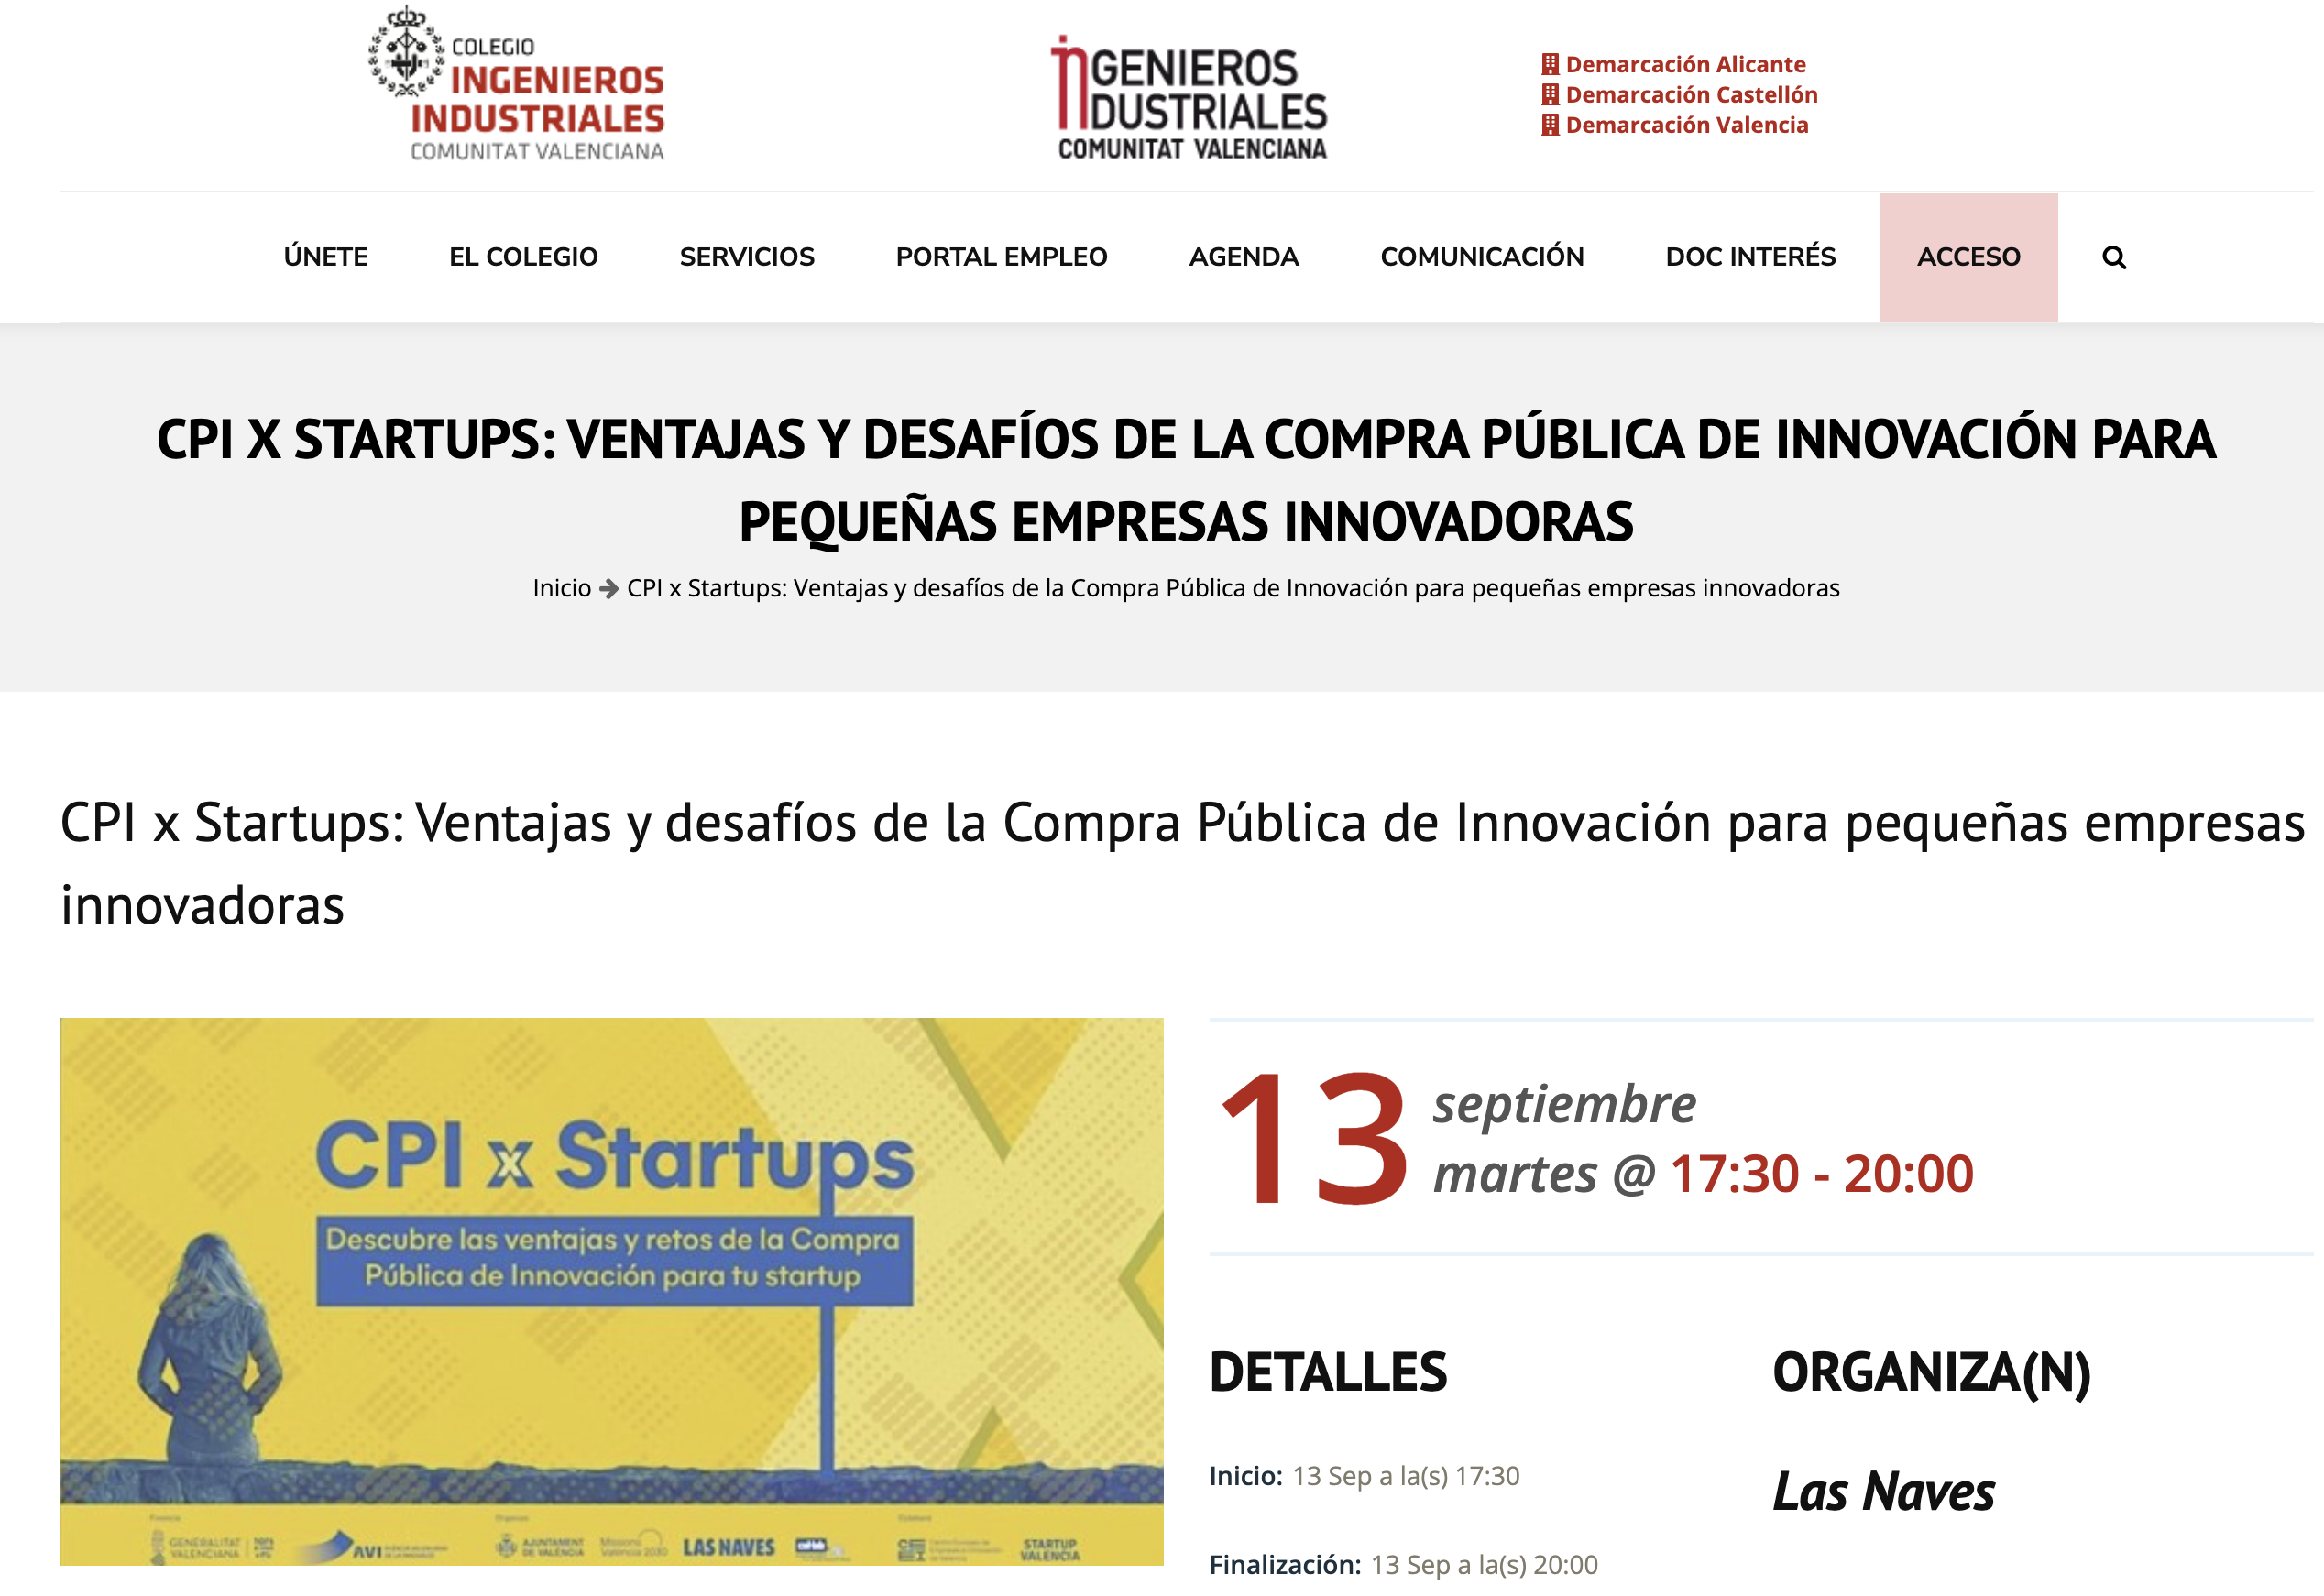 https://iicv.net/evento/cpi-x-startups-ventajas-y-desafios-de-la-compra-publica-de-innovacion-para-startups/